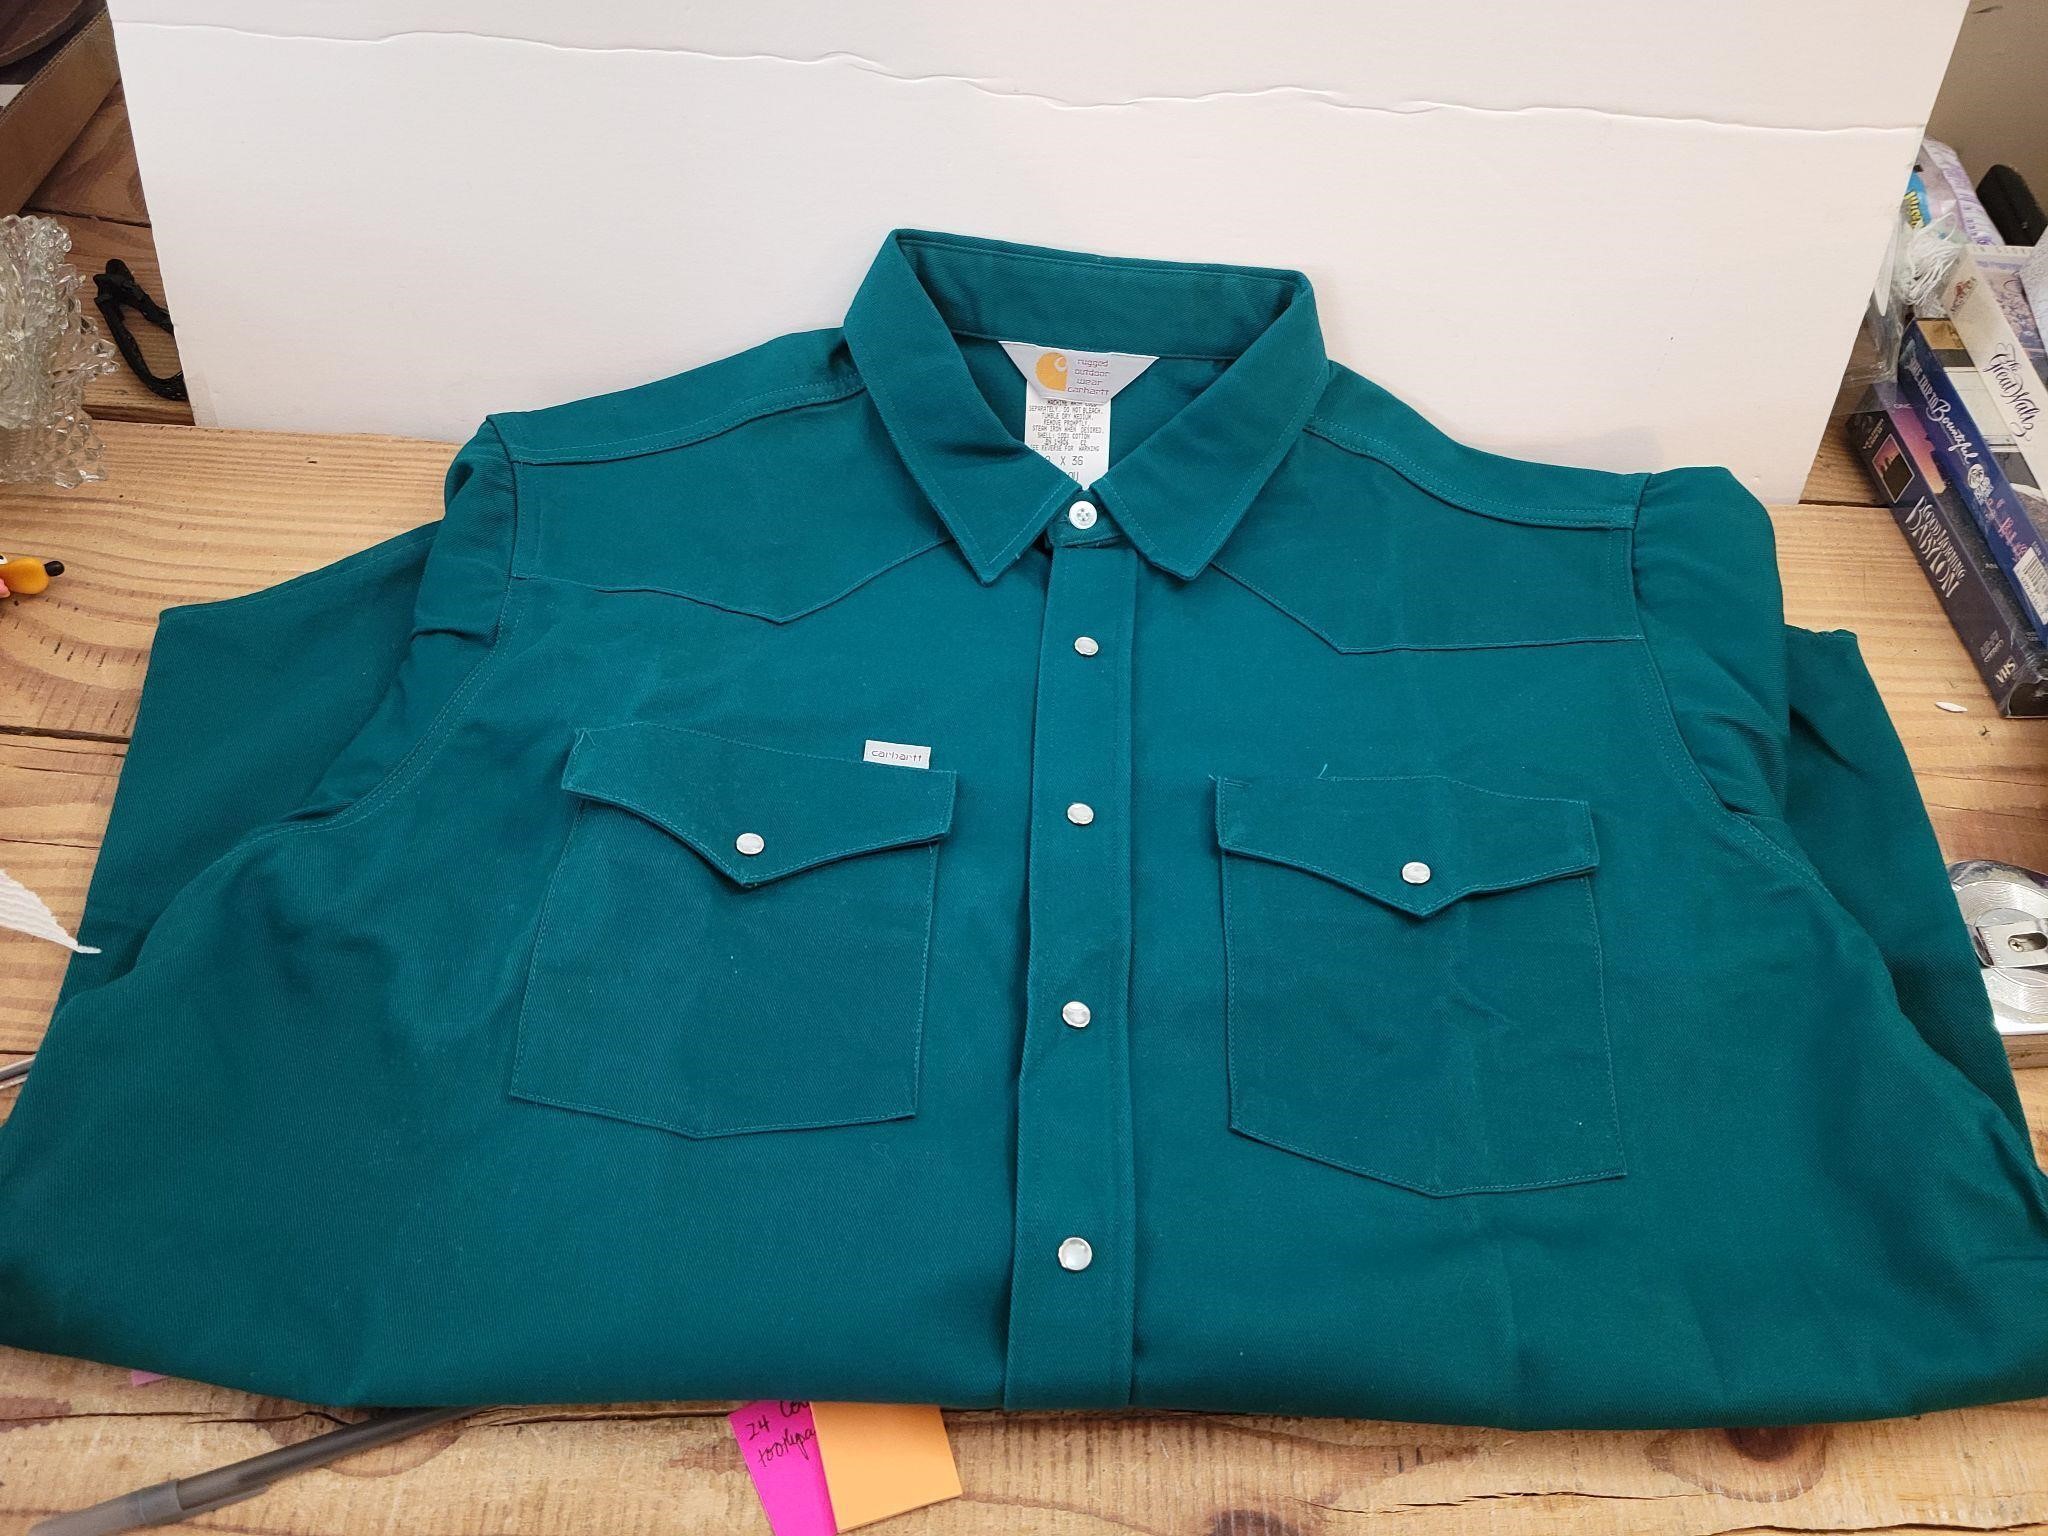 Teal Green Carhartt Work Shirt